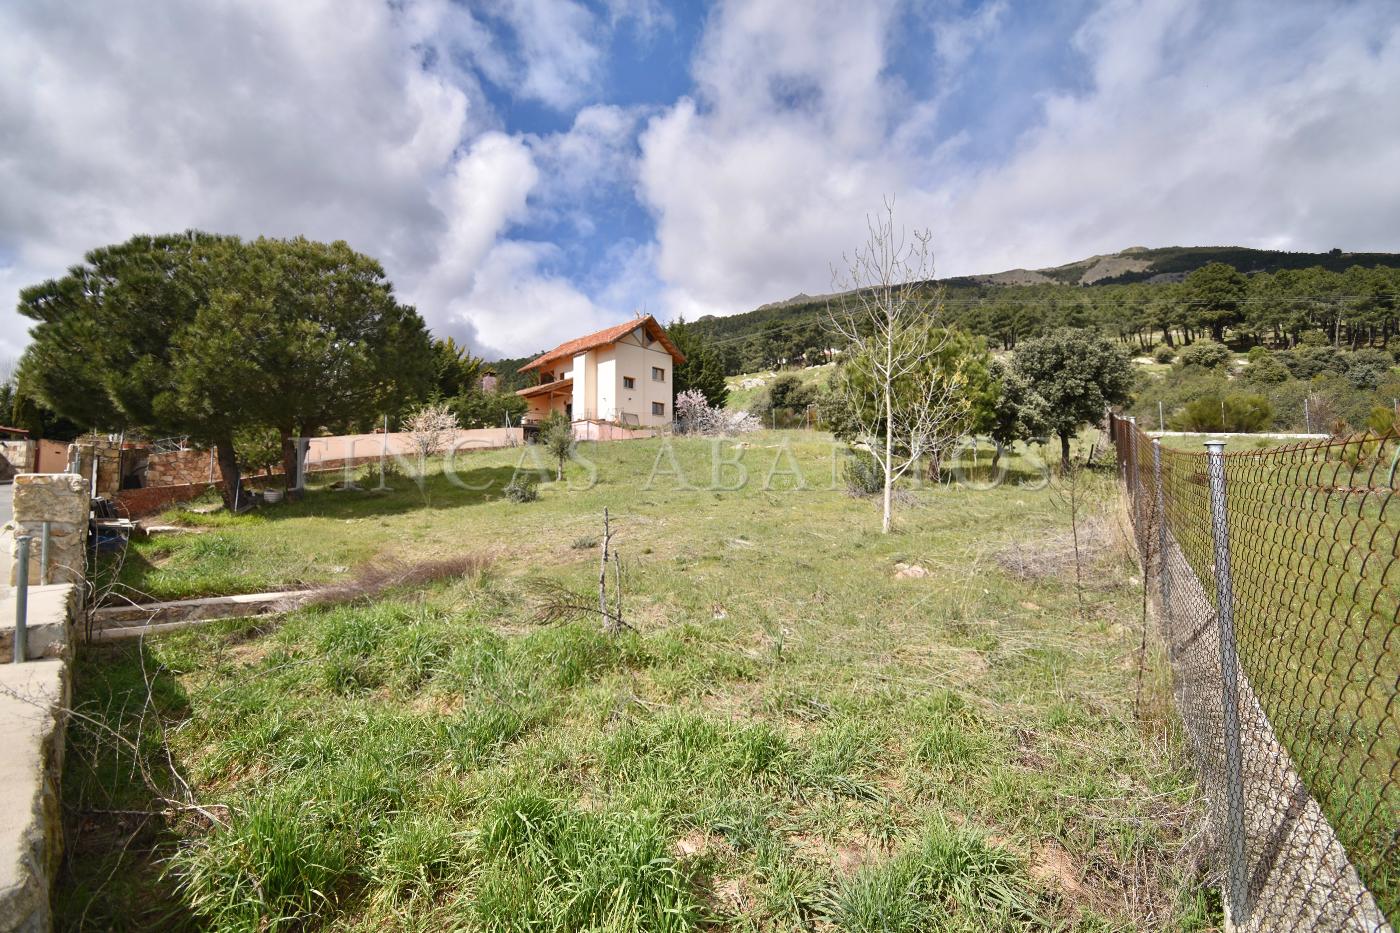 For sale of land in San Lorenzo de El Escorial